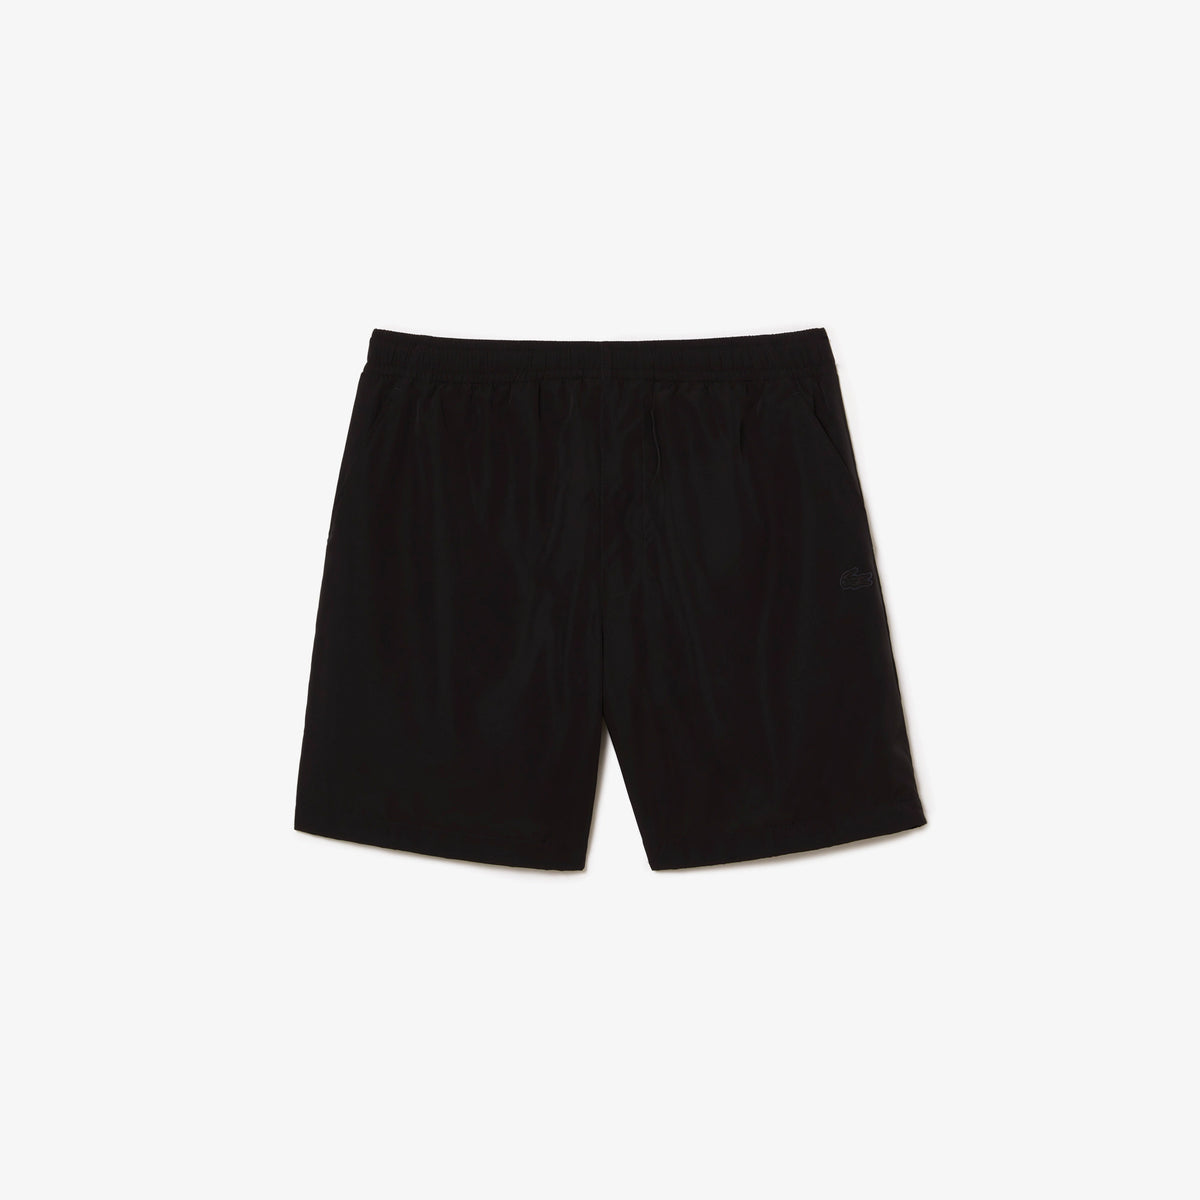 Lacoste - Waterproof Shorts - Black